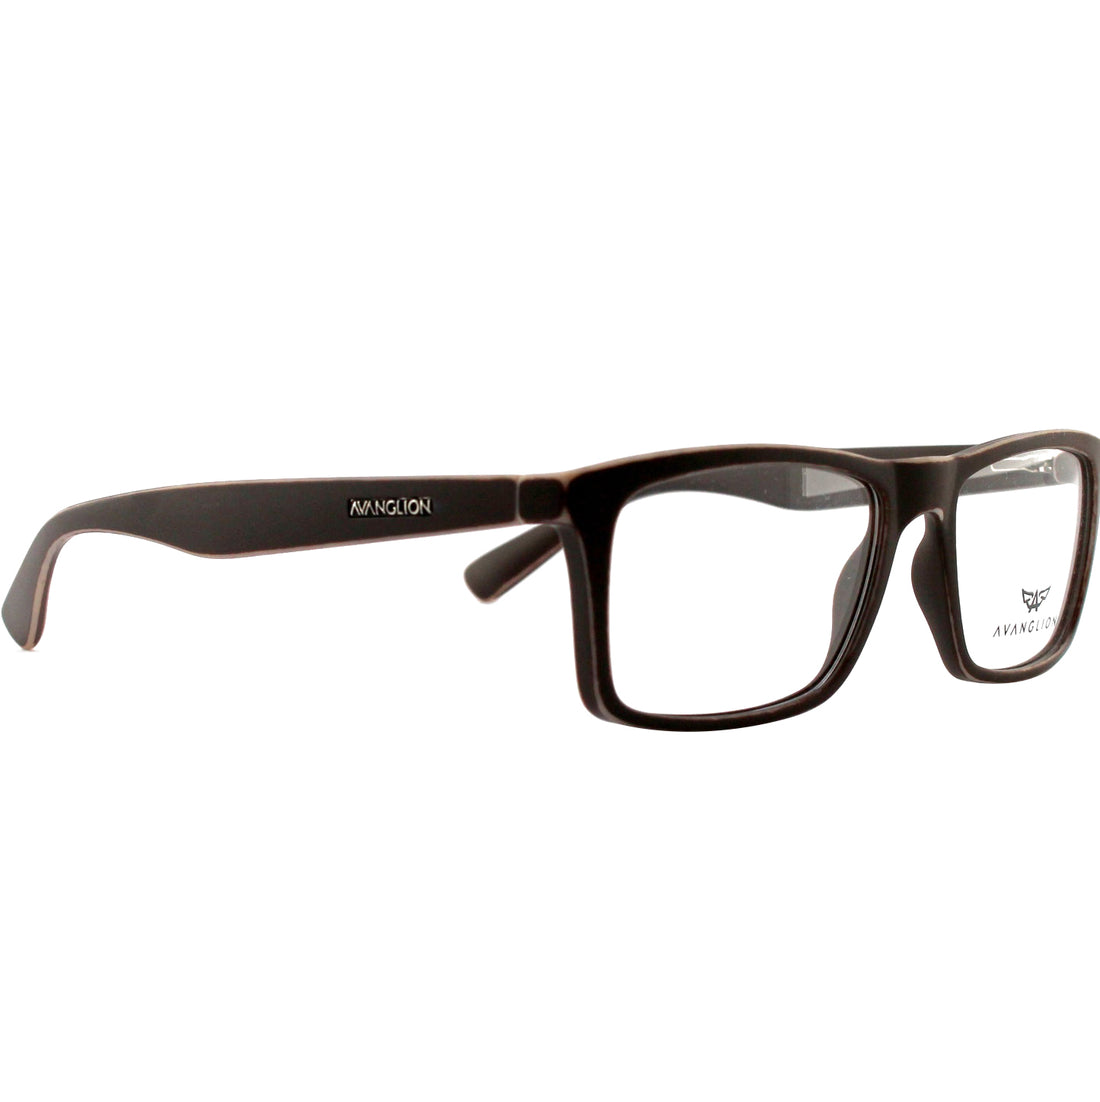 Montatura per occhiali Avanglion | Modello AV10910